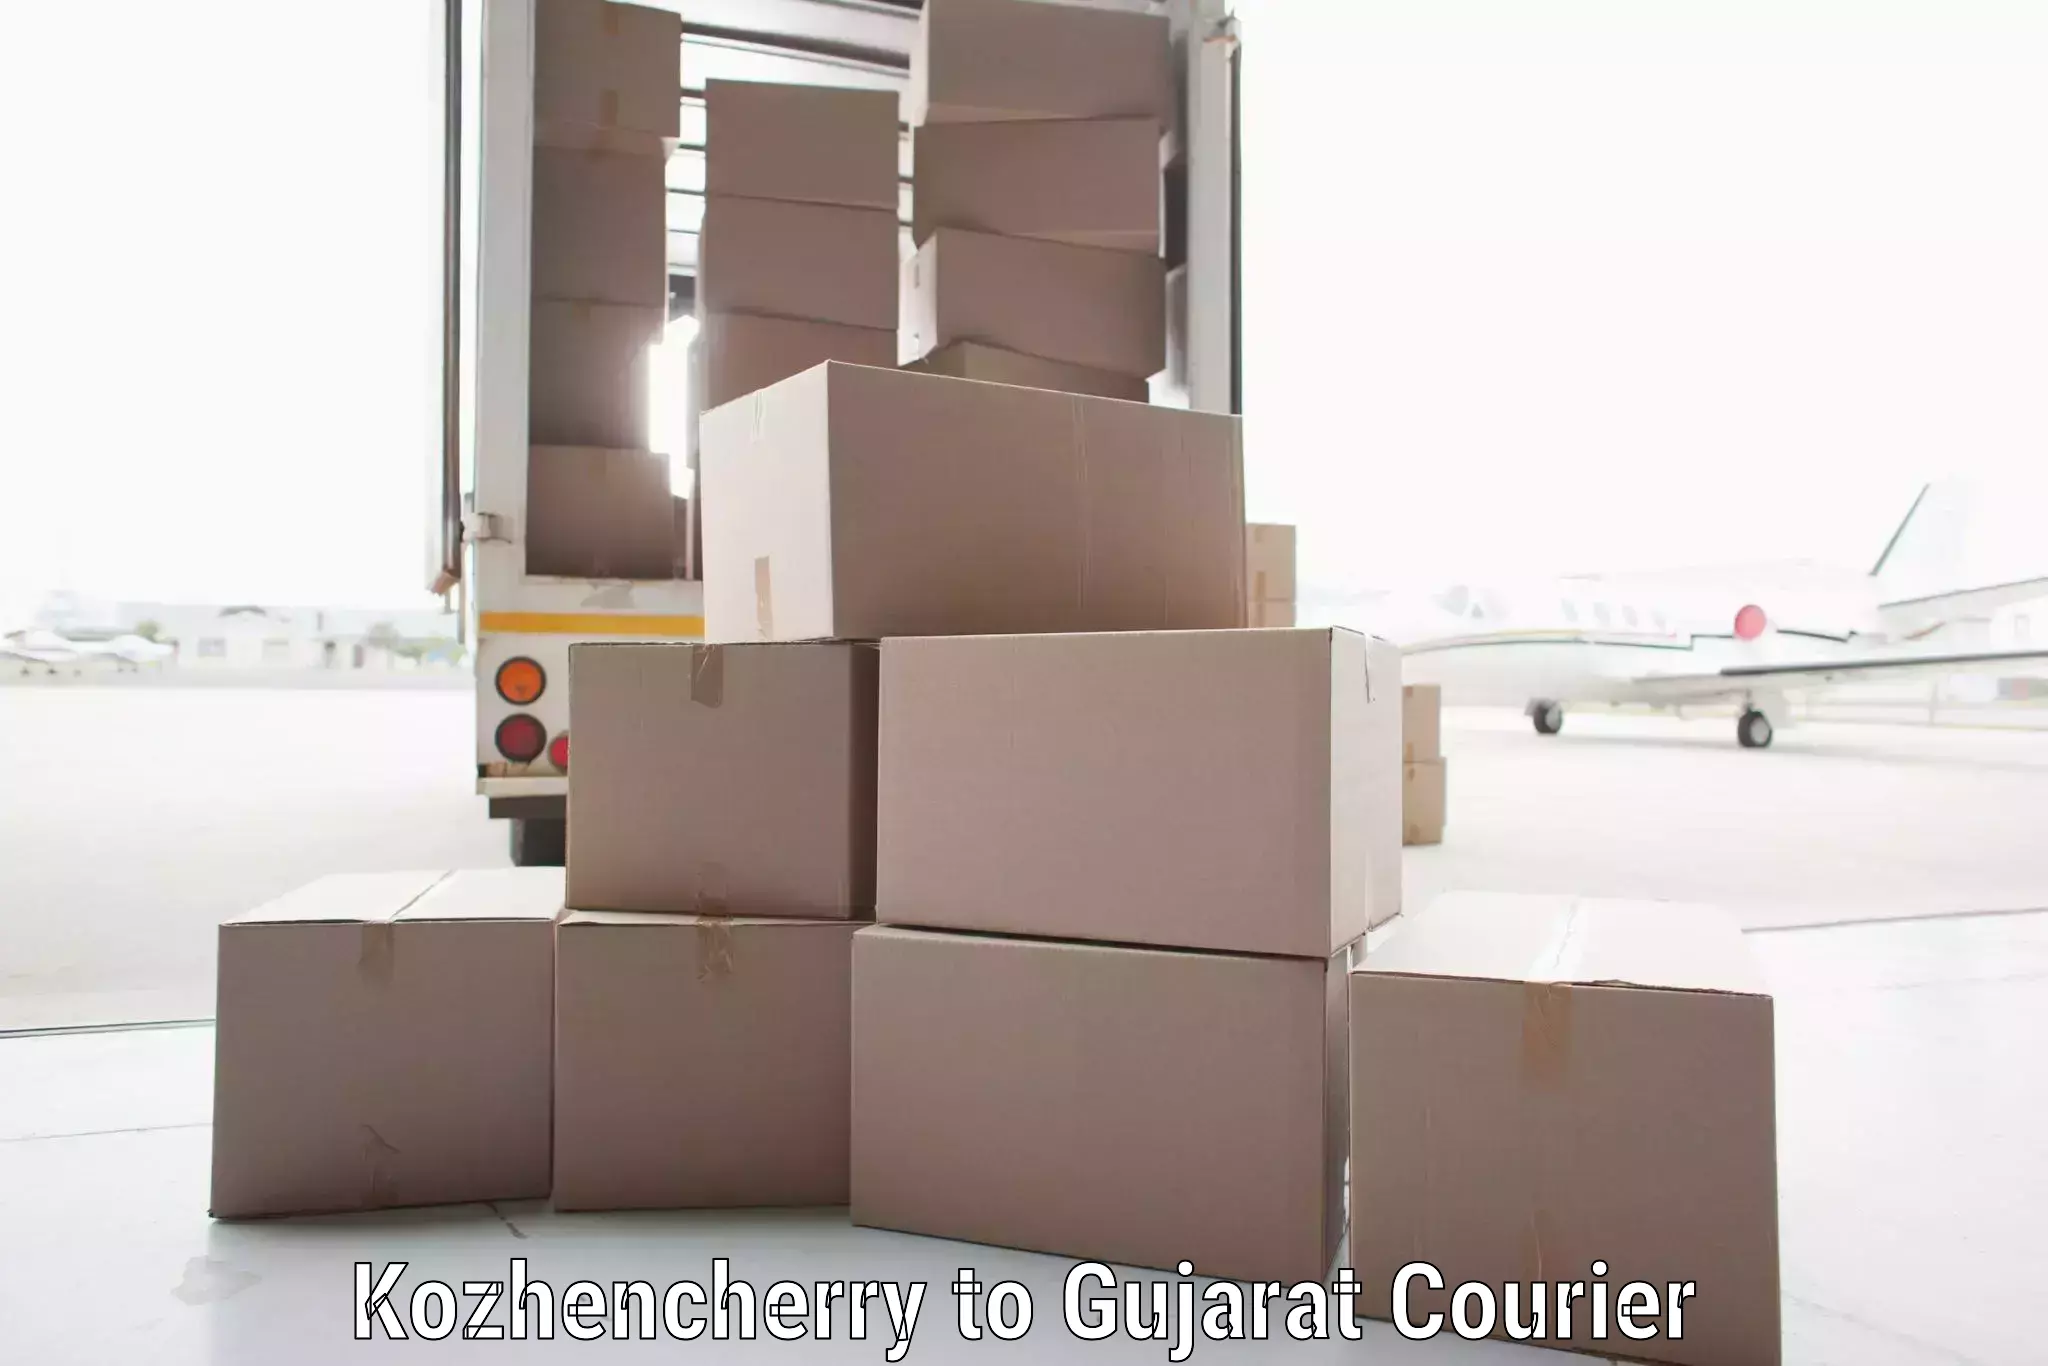 Round-the-clock parcel delivery Kozhencherry to Gandhidham